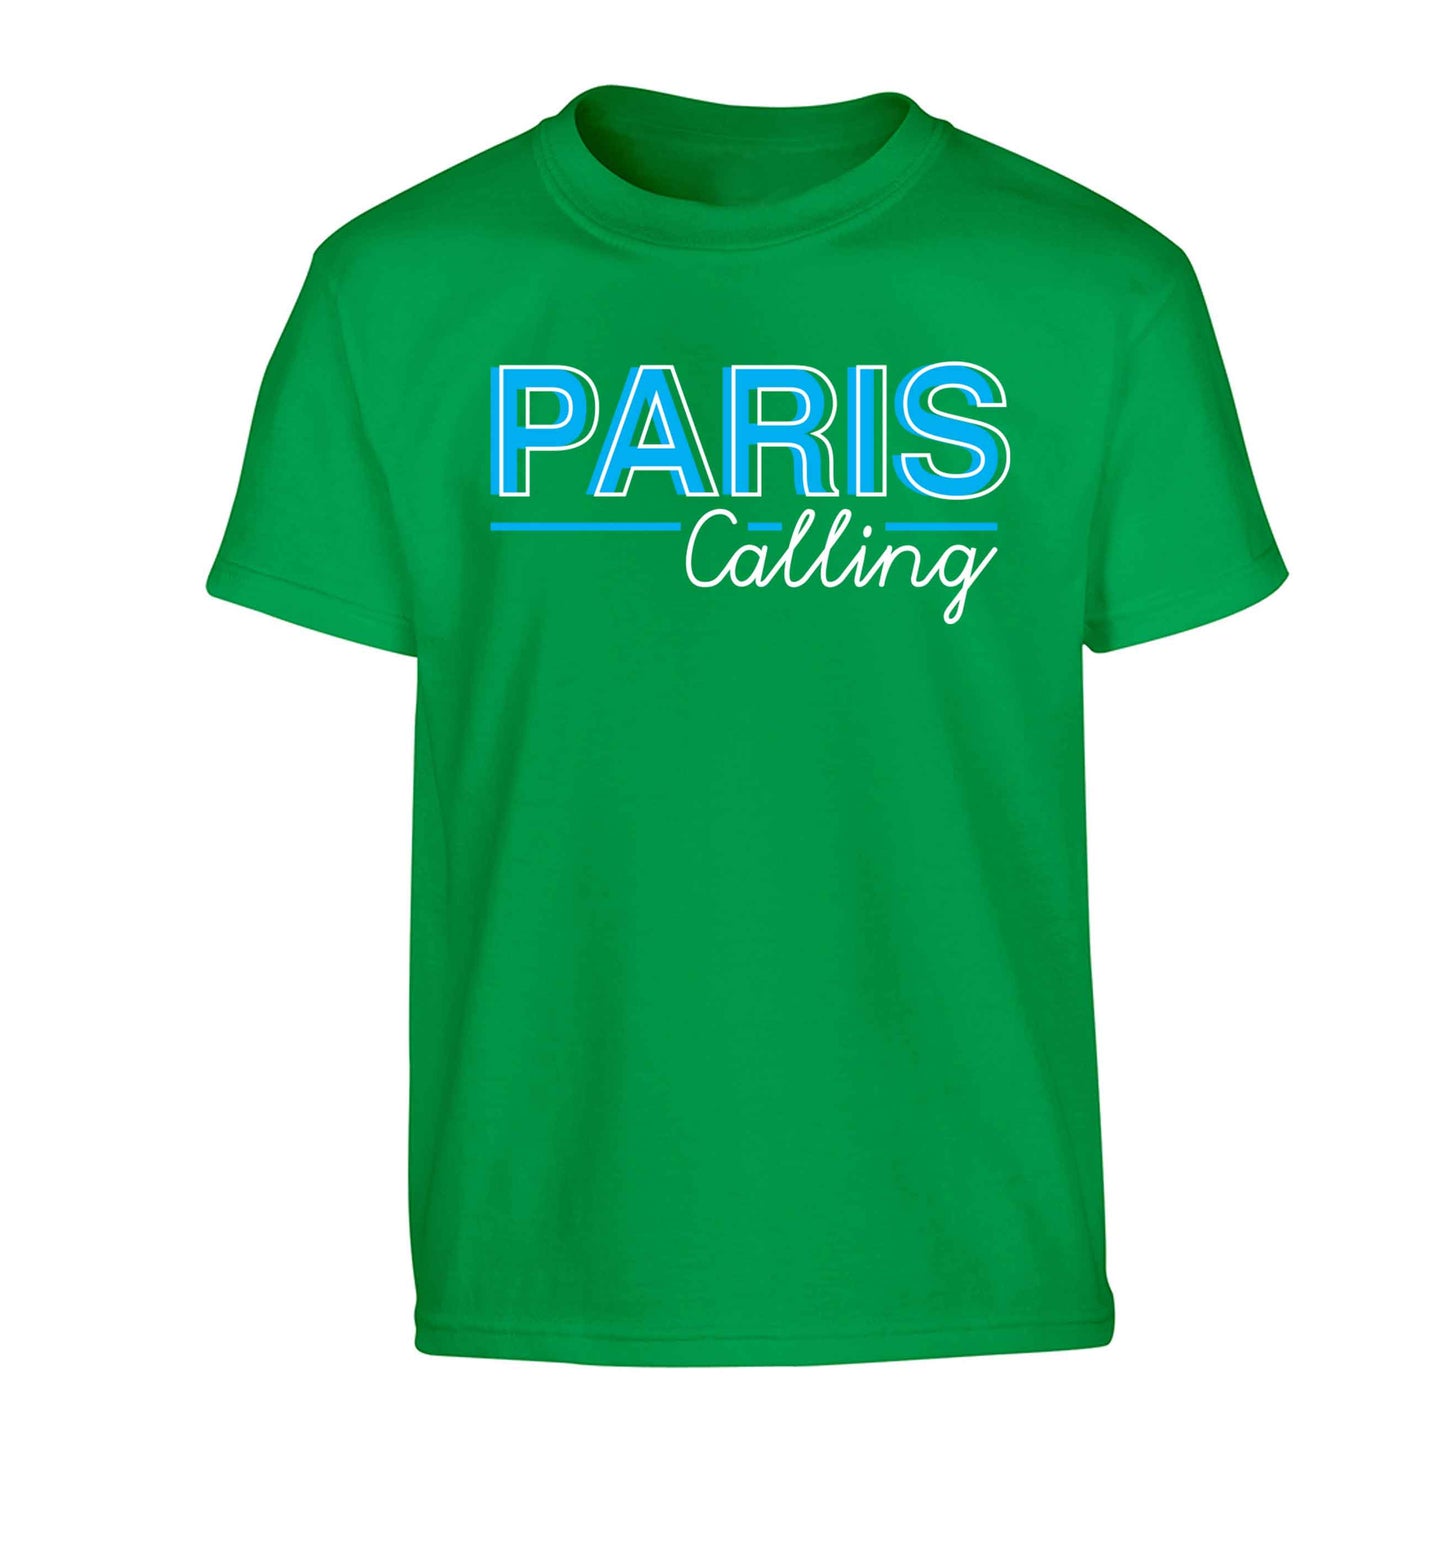 Paris calling Children's green Tshirt 12-13 Years